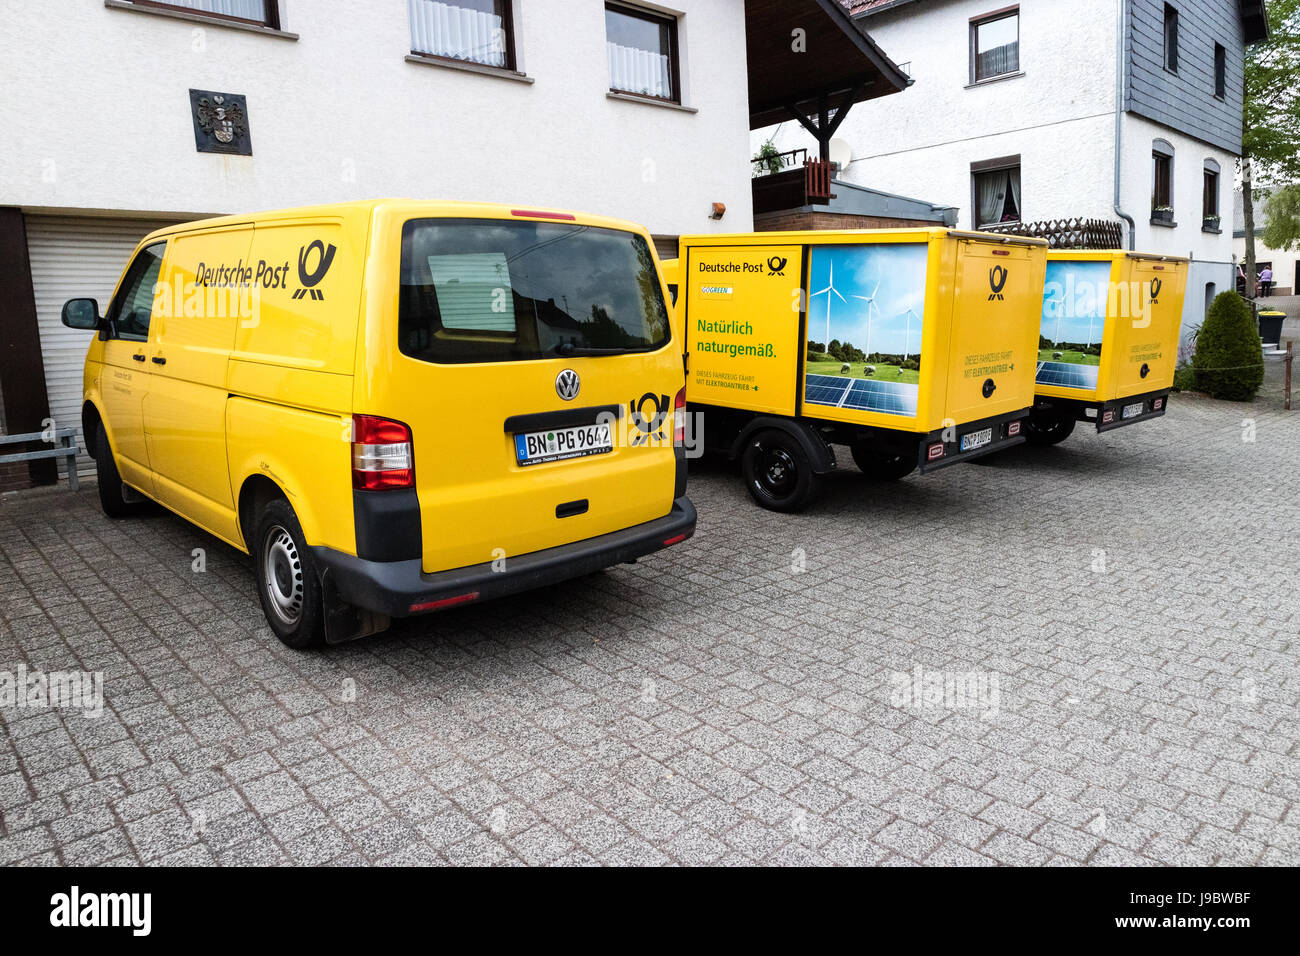 Deux treetscooter» - Voiture électrique avec boîte carrée de Deutsche Post DHL - Nettersheim, North Rhine Westphalia, NRW, Germany, Europe Banque D'Images